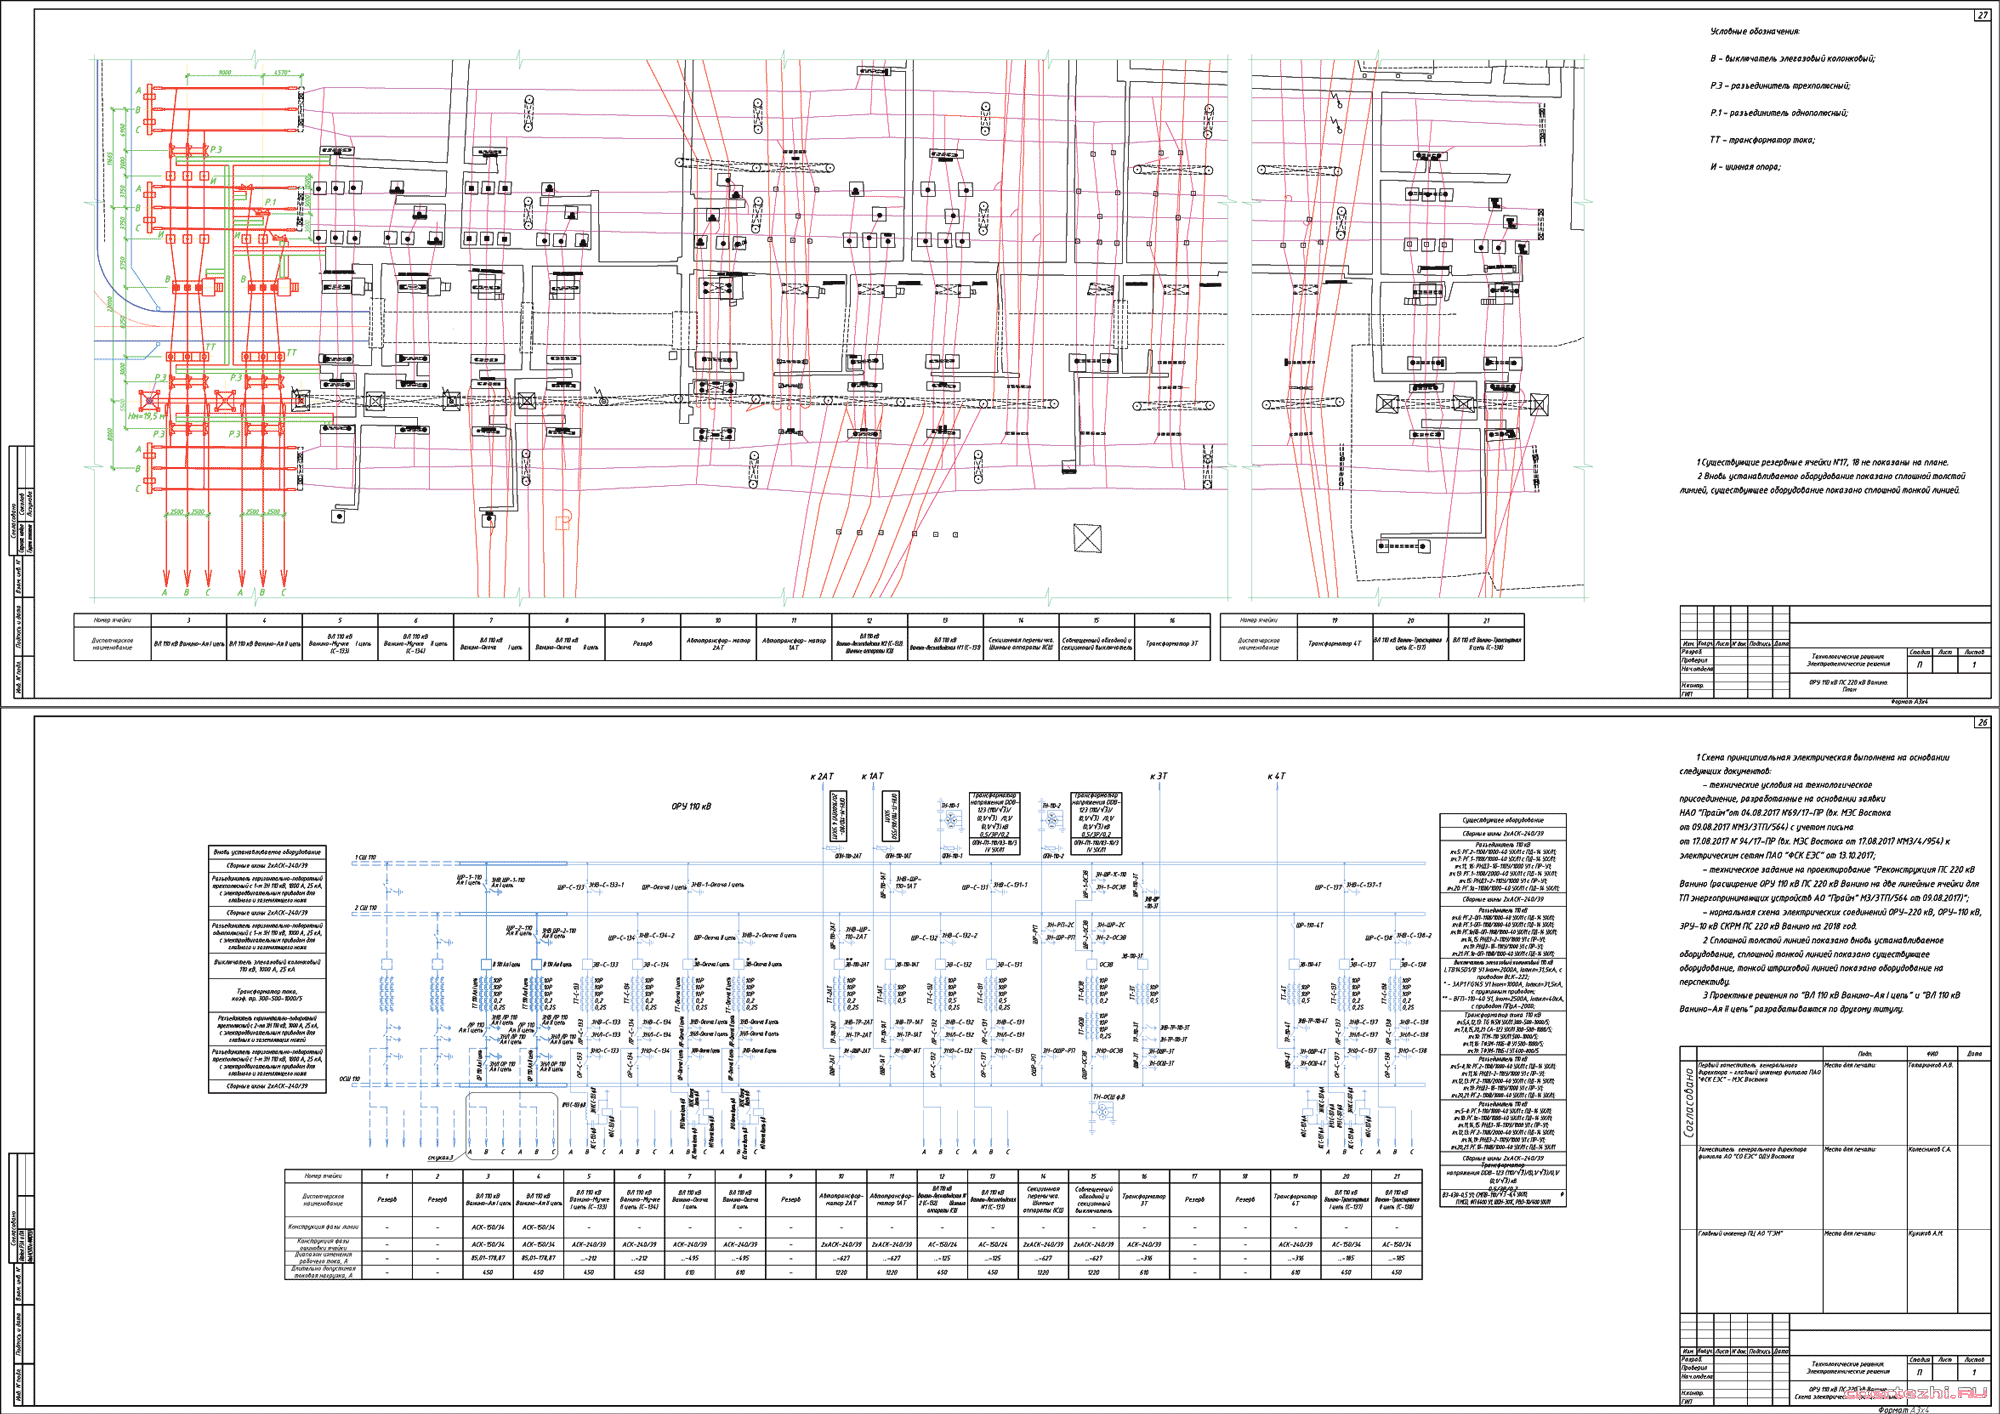 ЭП Реконструкция ПС 220 кВ (расширение ОРУ 110 кВ на две линейные ячейки для ТП энергопринимающих устройств)